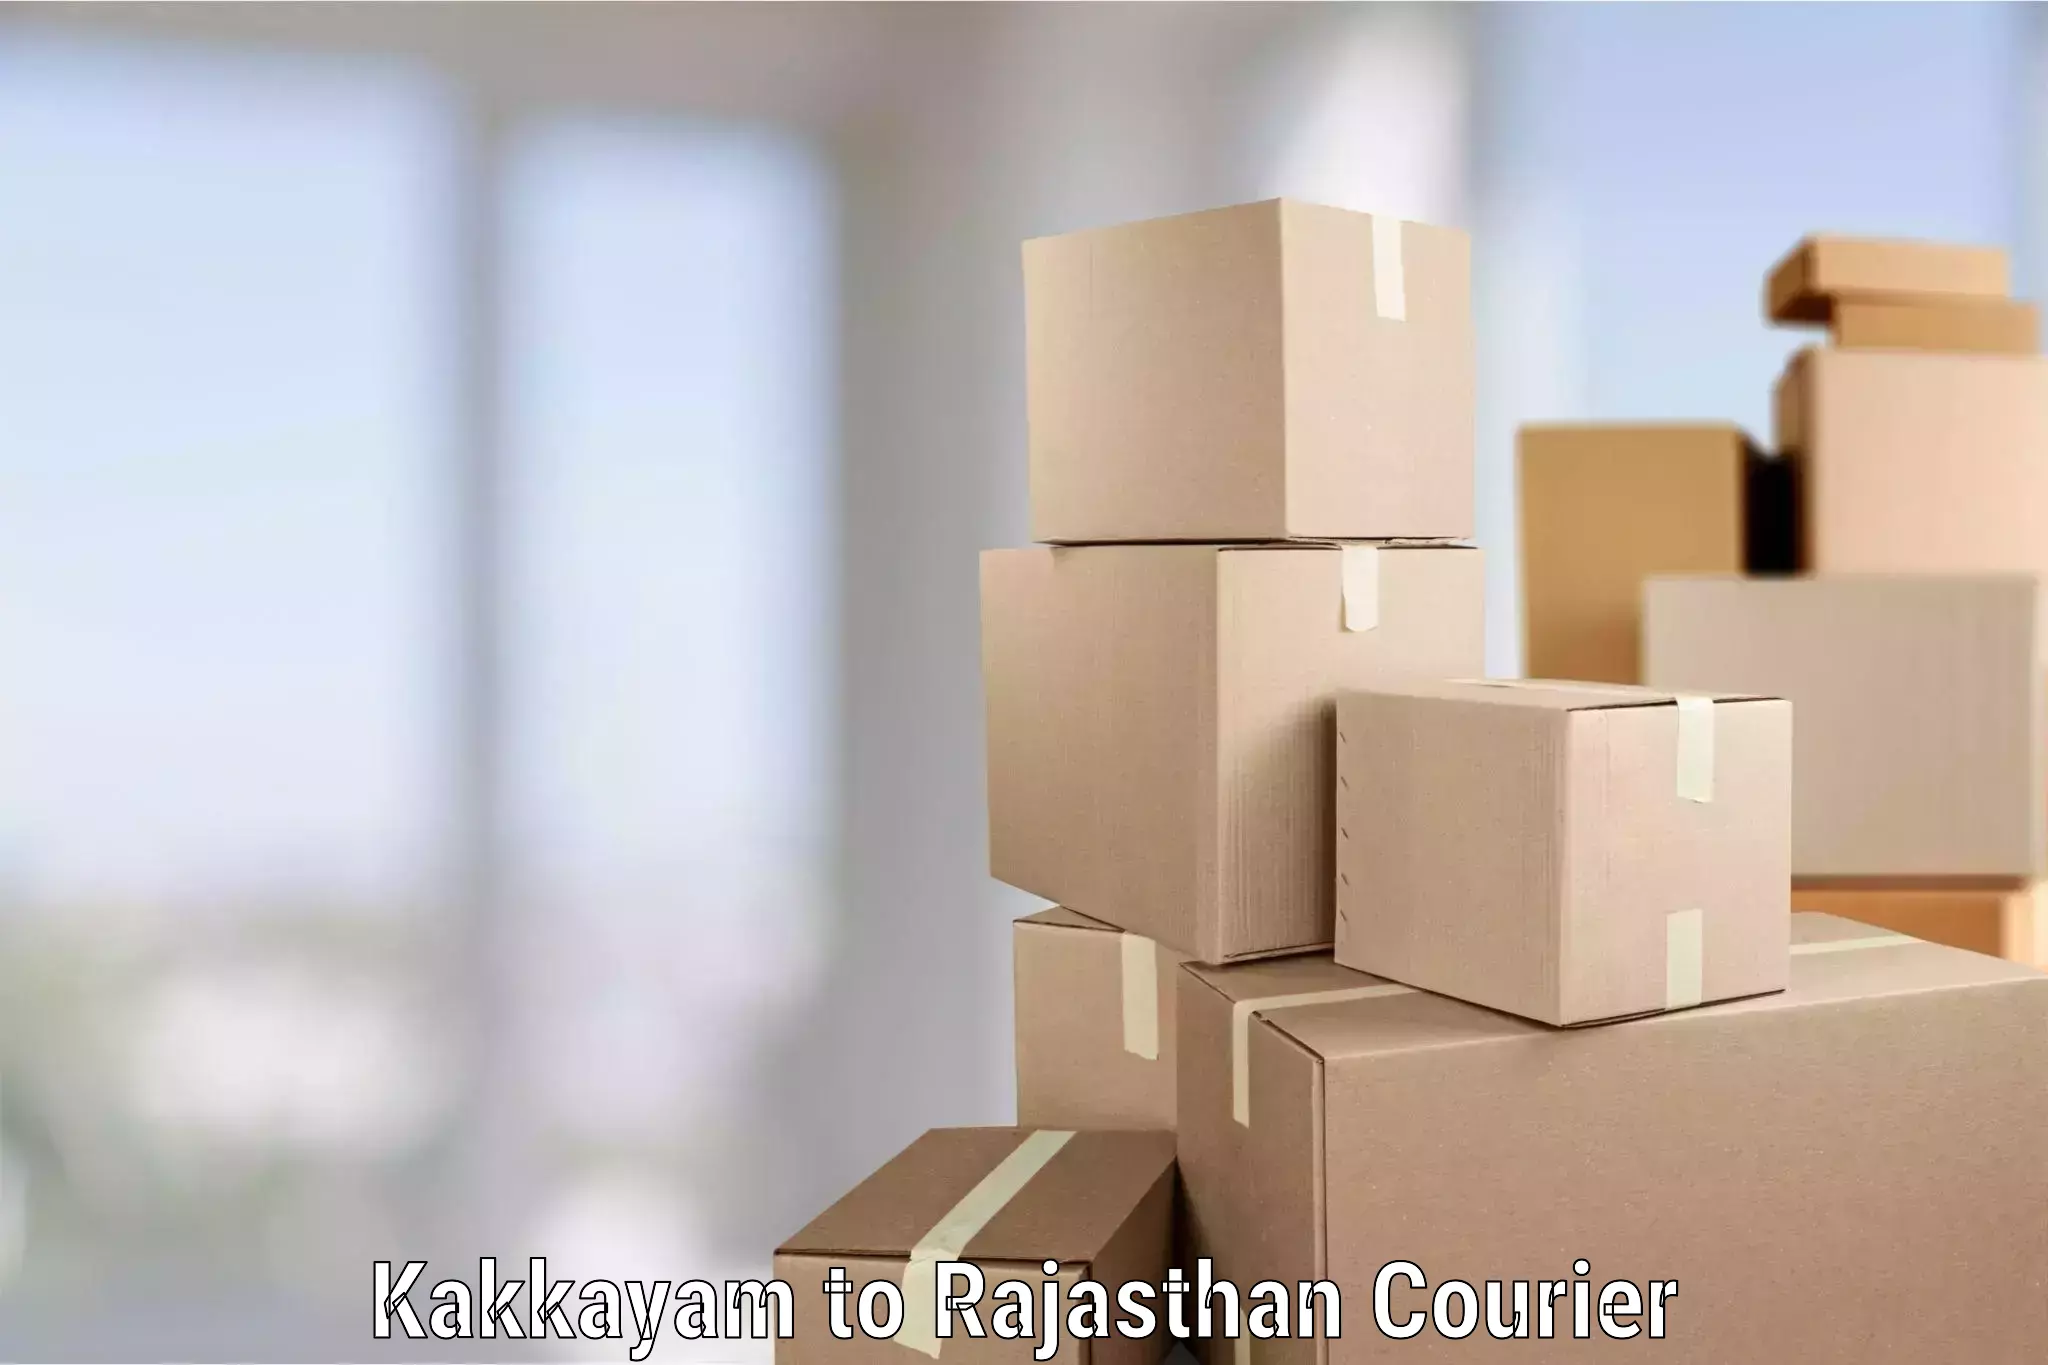 Furniture relocation experts Kakkayam to Rajasthan